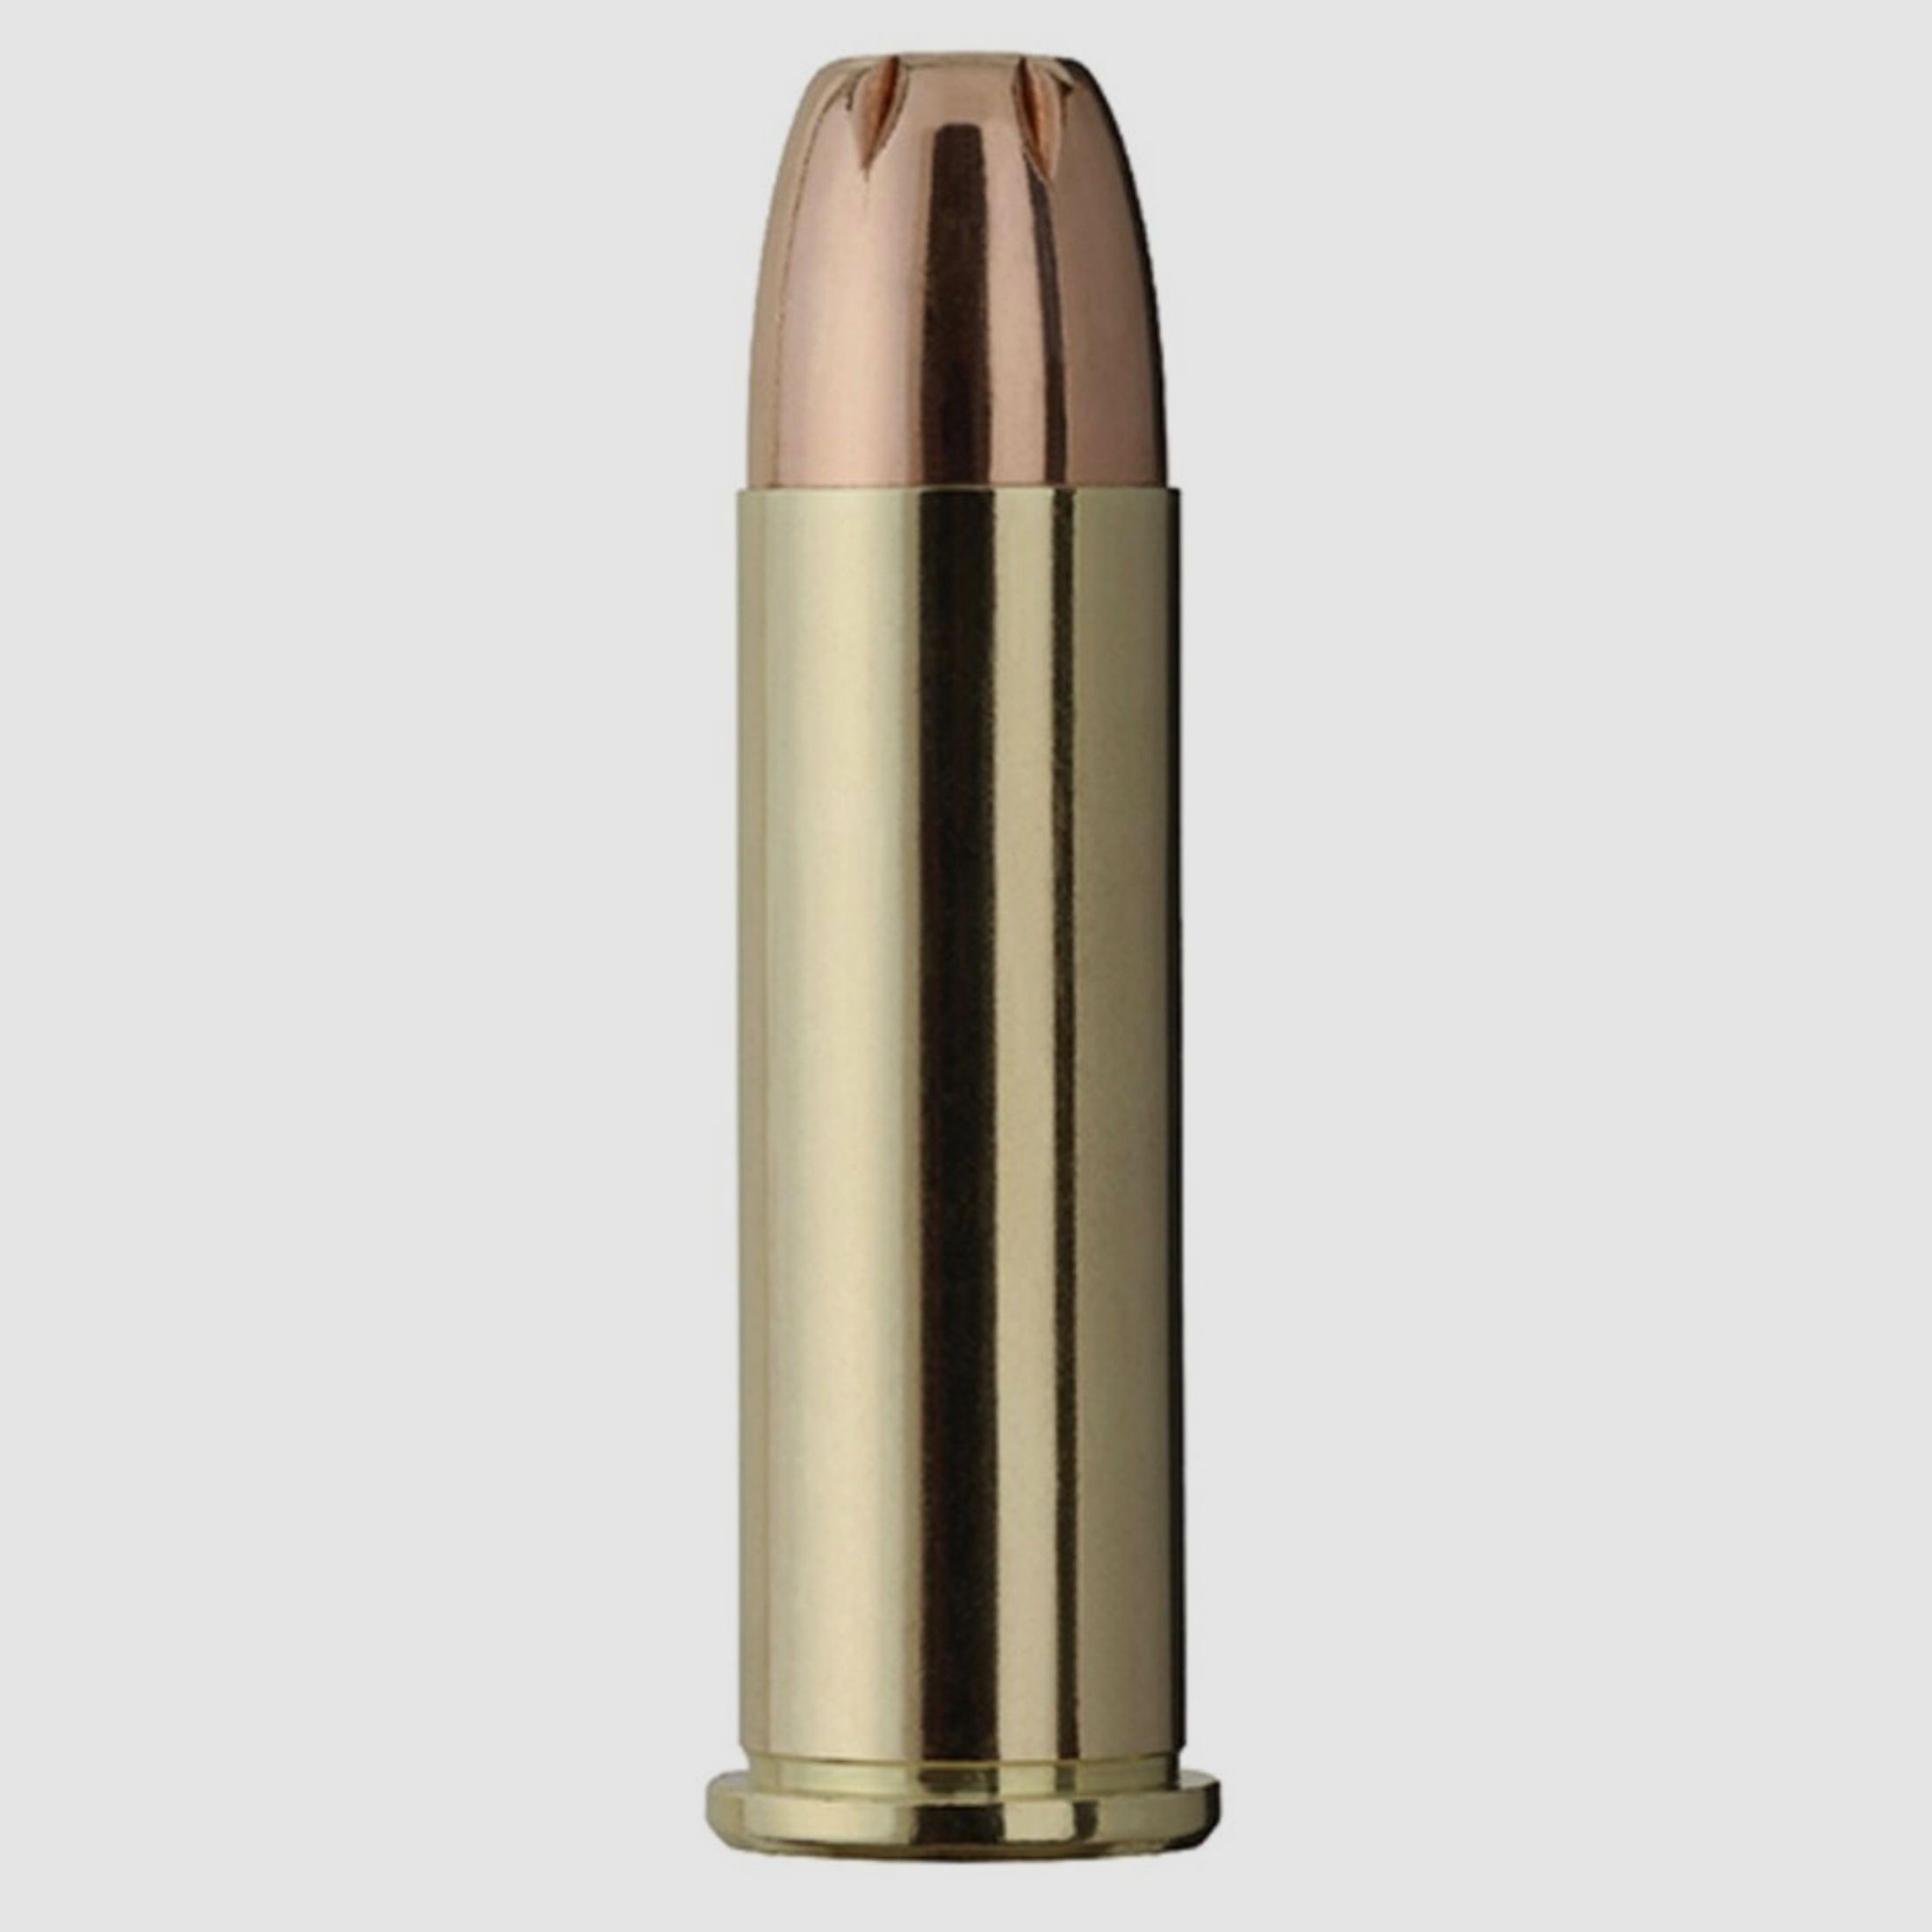 GECO 2317721.357 Magnum Hohlspitz 10,2g / 158grs.